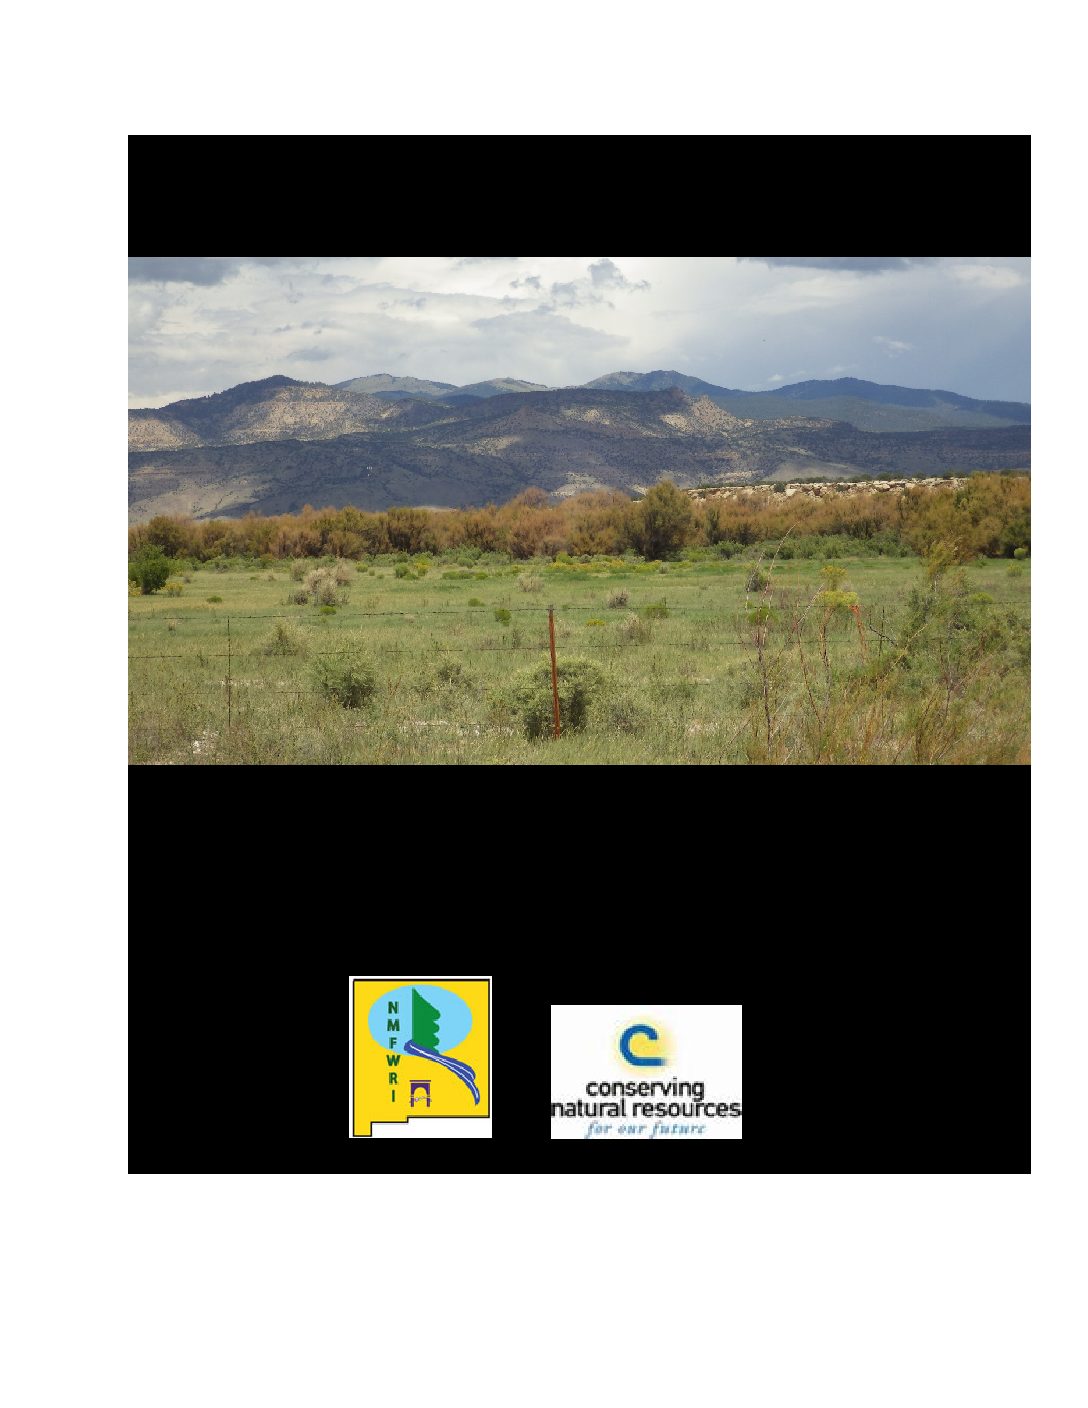 Acoma Pueblo Demo Area 16-14, Pre-Treatment Monitoring Report, 2016